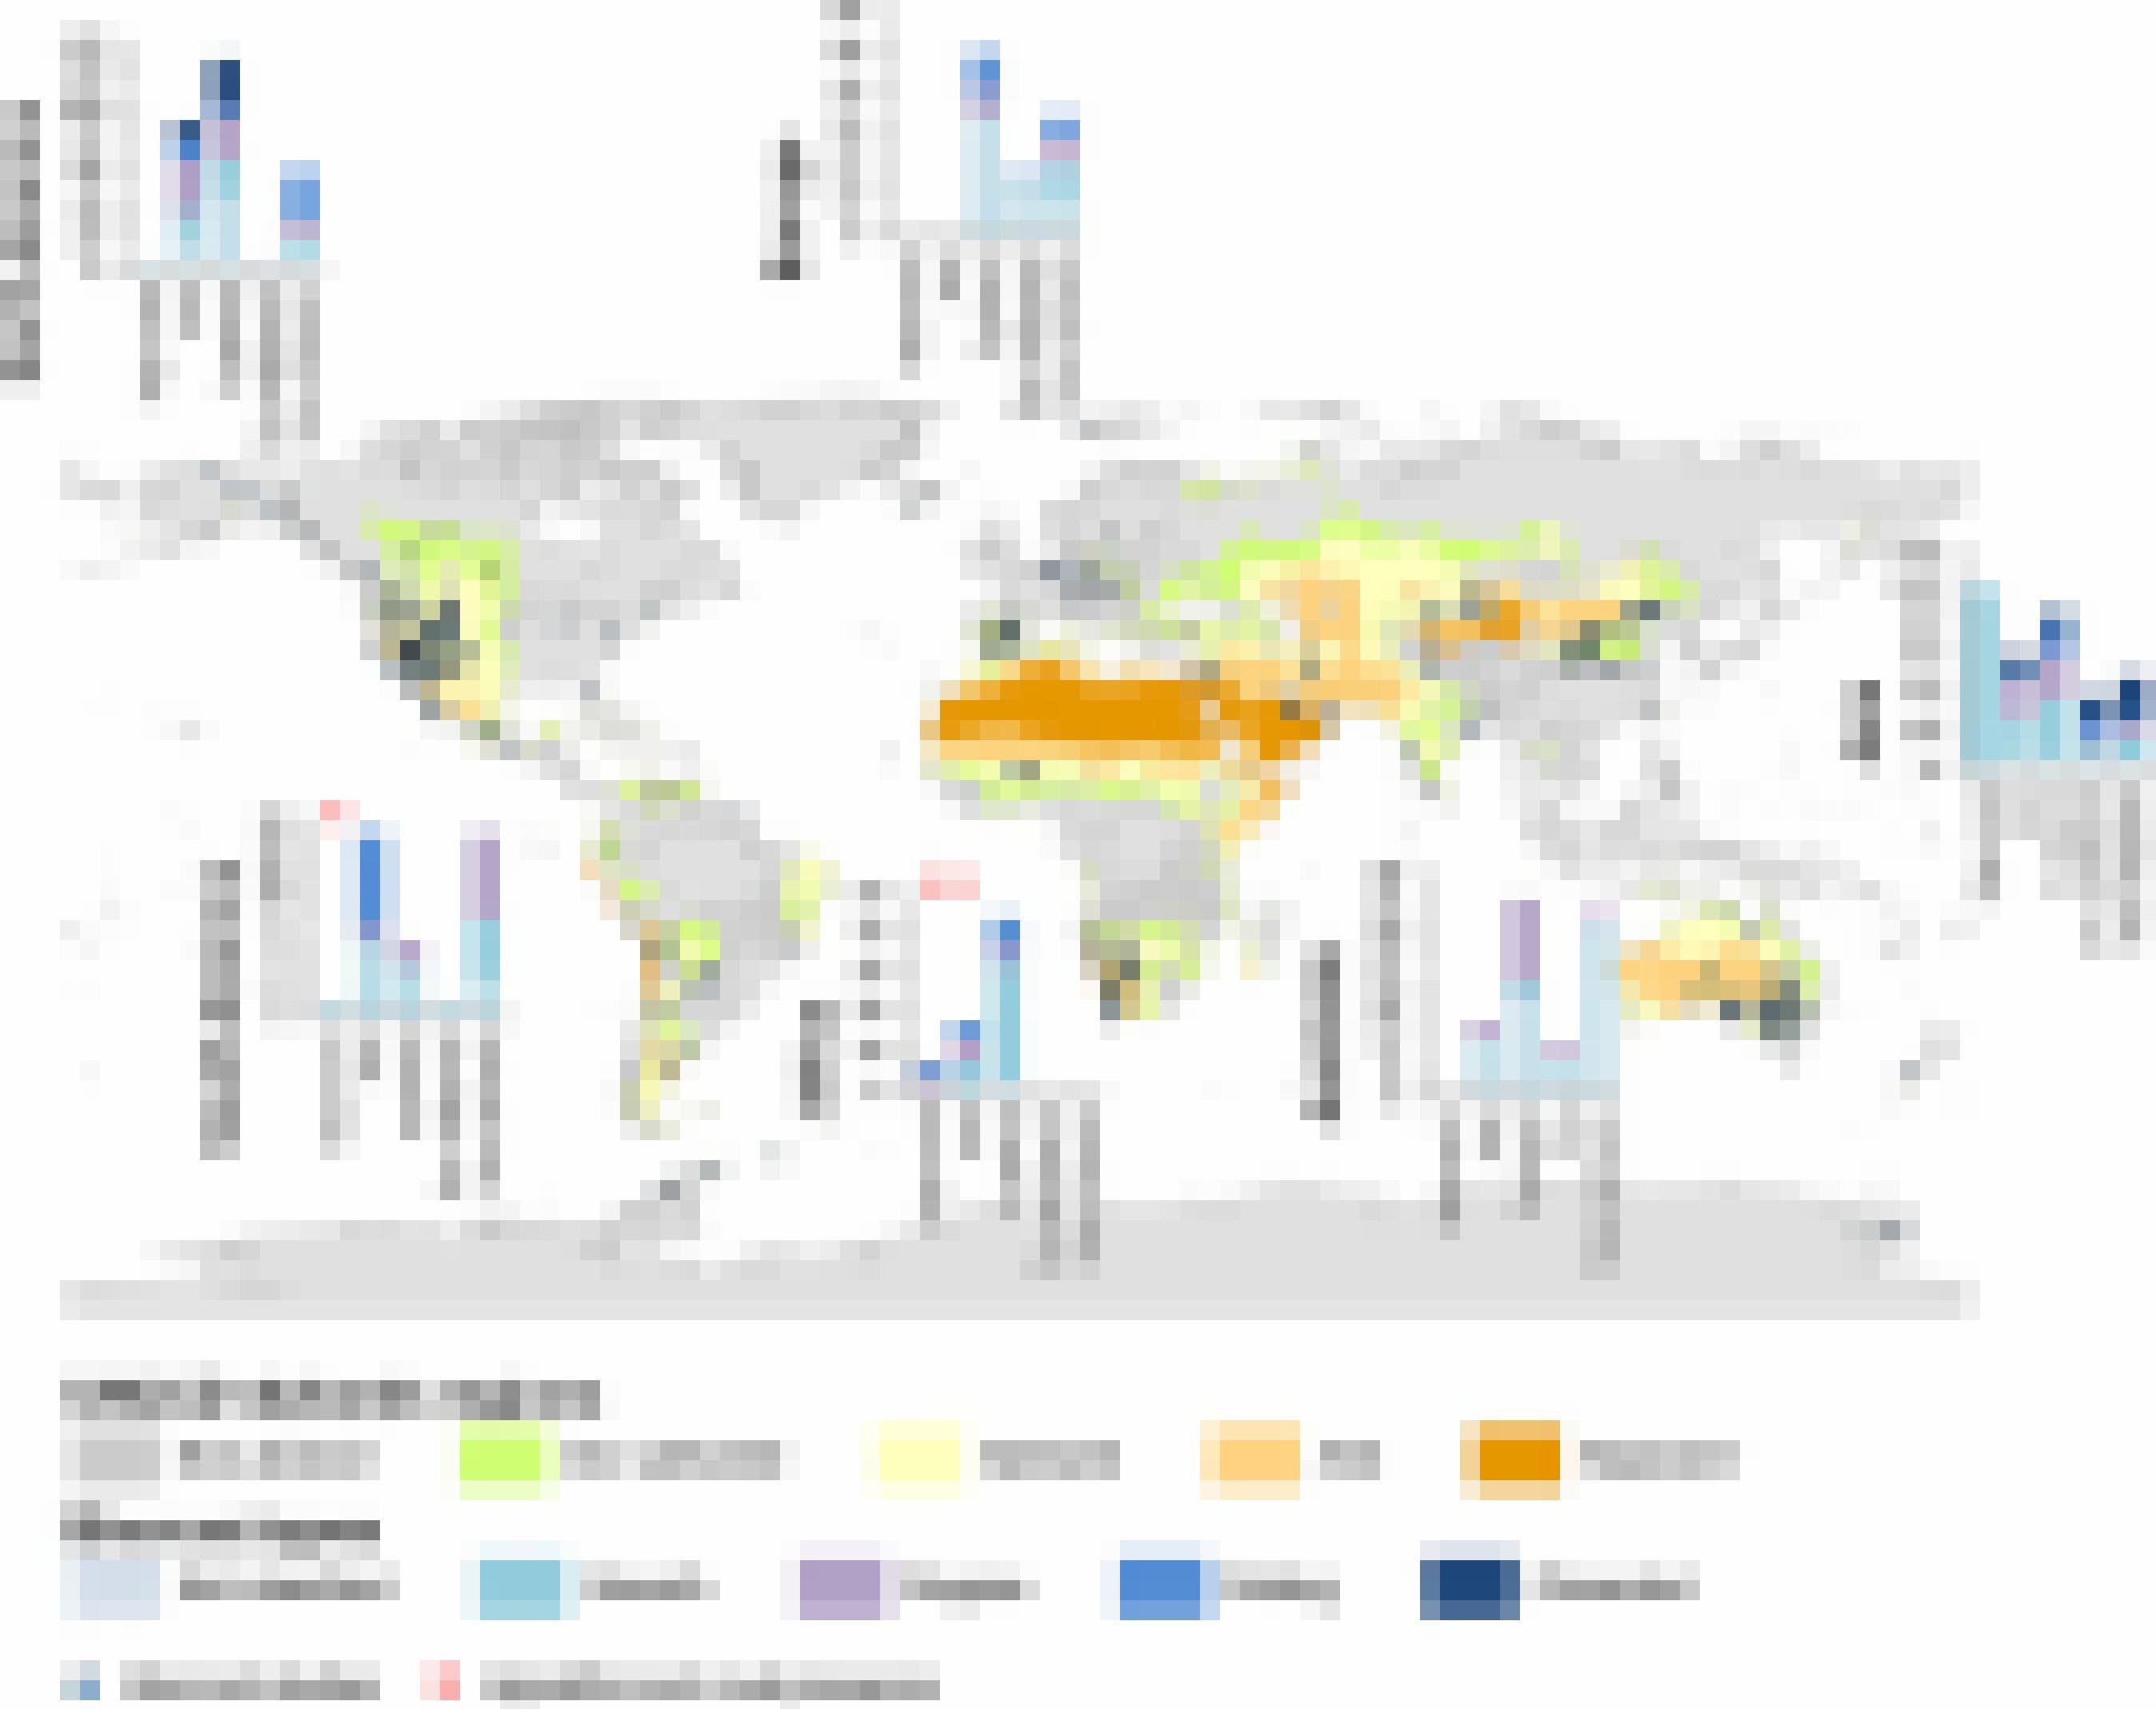 Weltkarte mit farbig unterschiedlich markierten Trockengebieten. Verschiedene Biokrustentypen sind ebenfalls angezeigt und nach Kontinent sowie Art der Region aufgeschlüsselt.